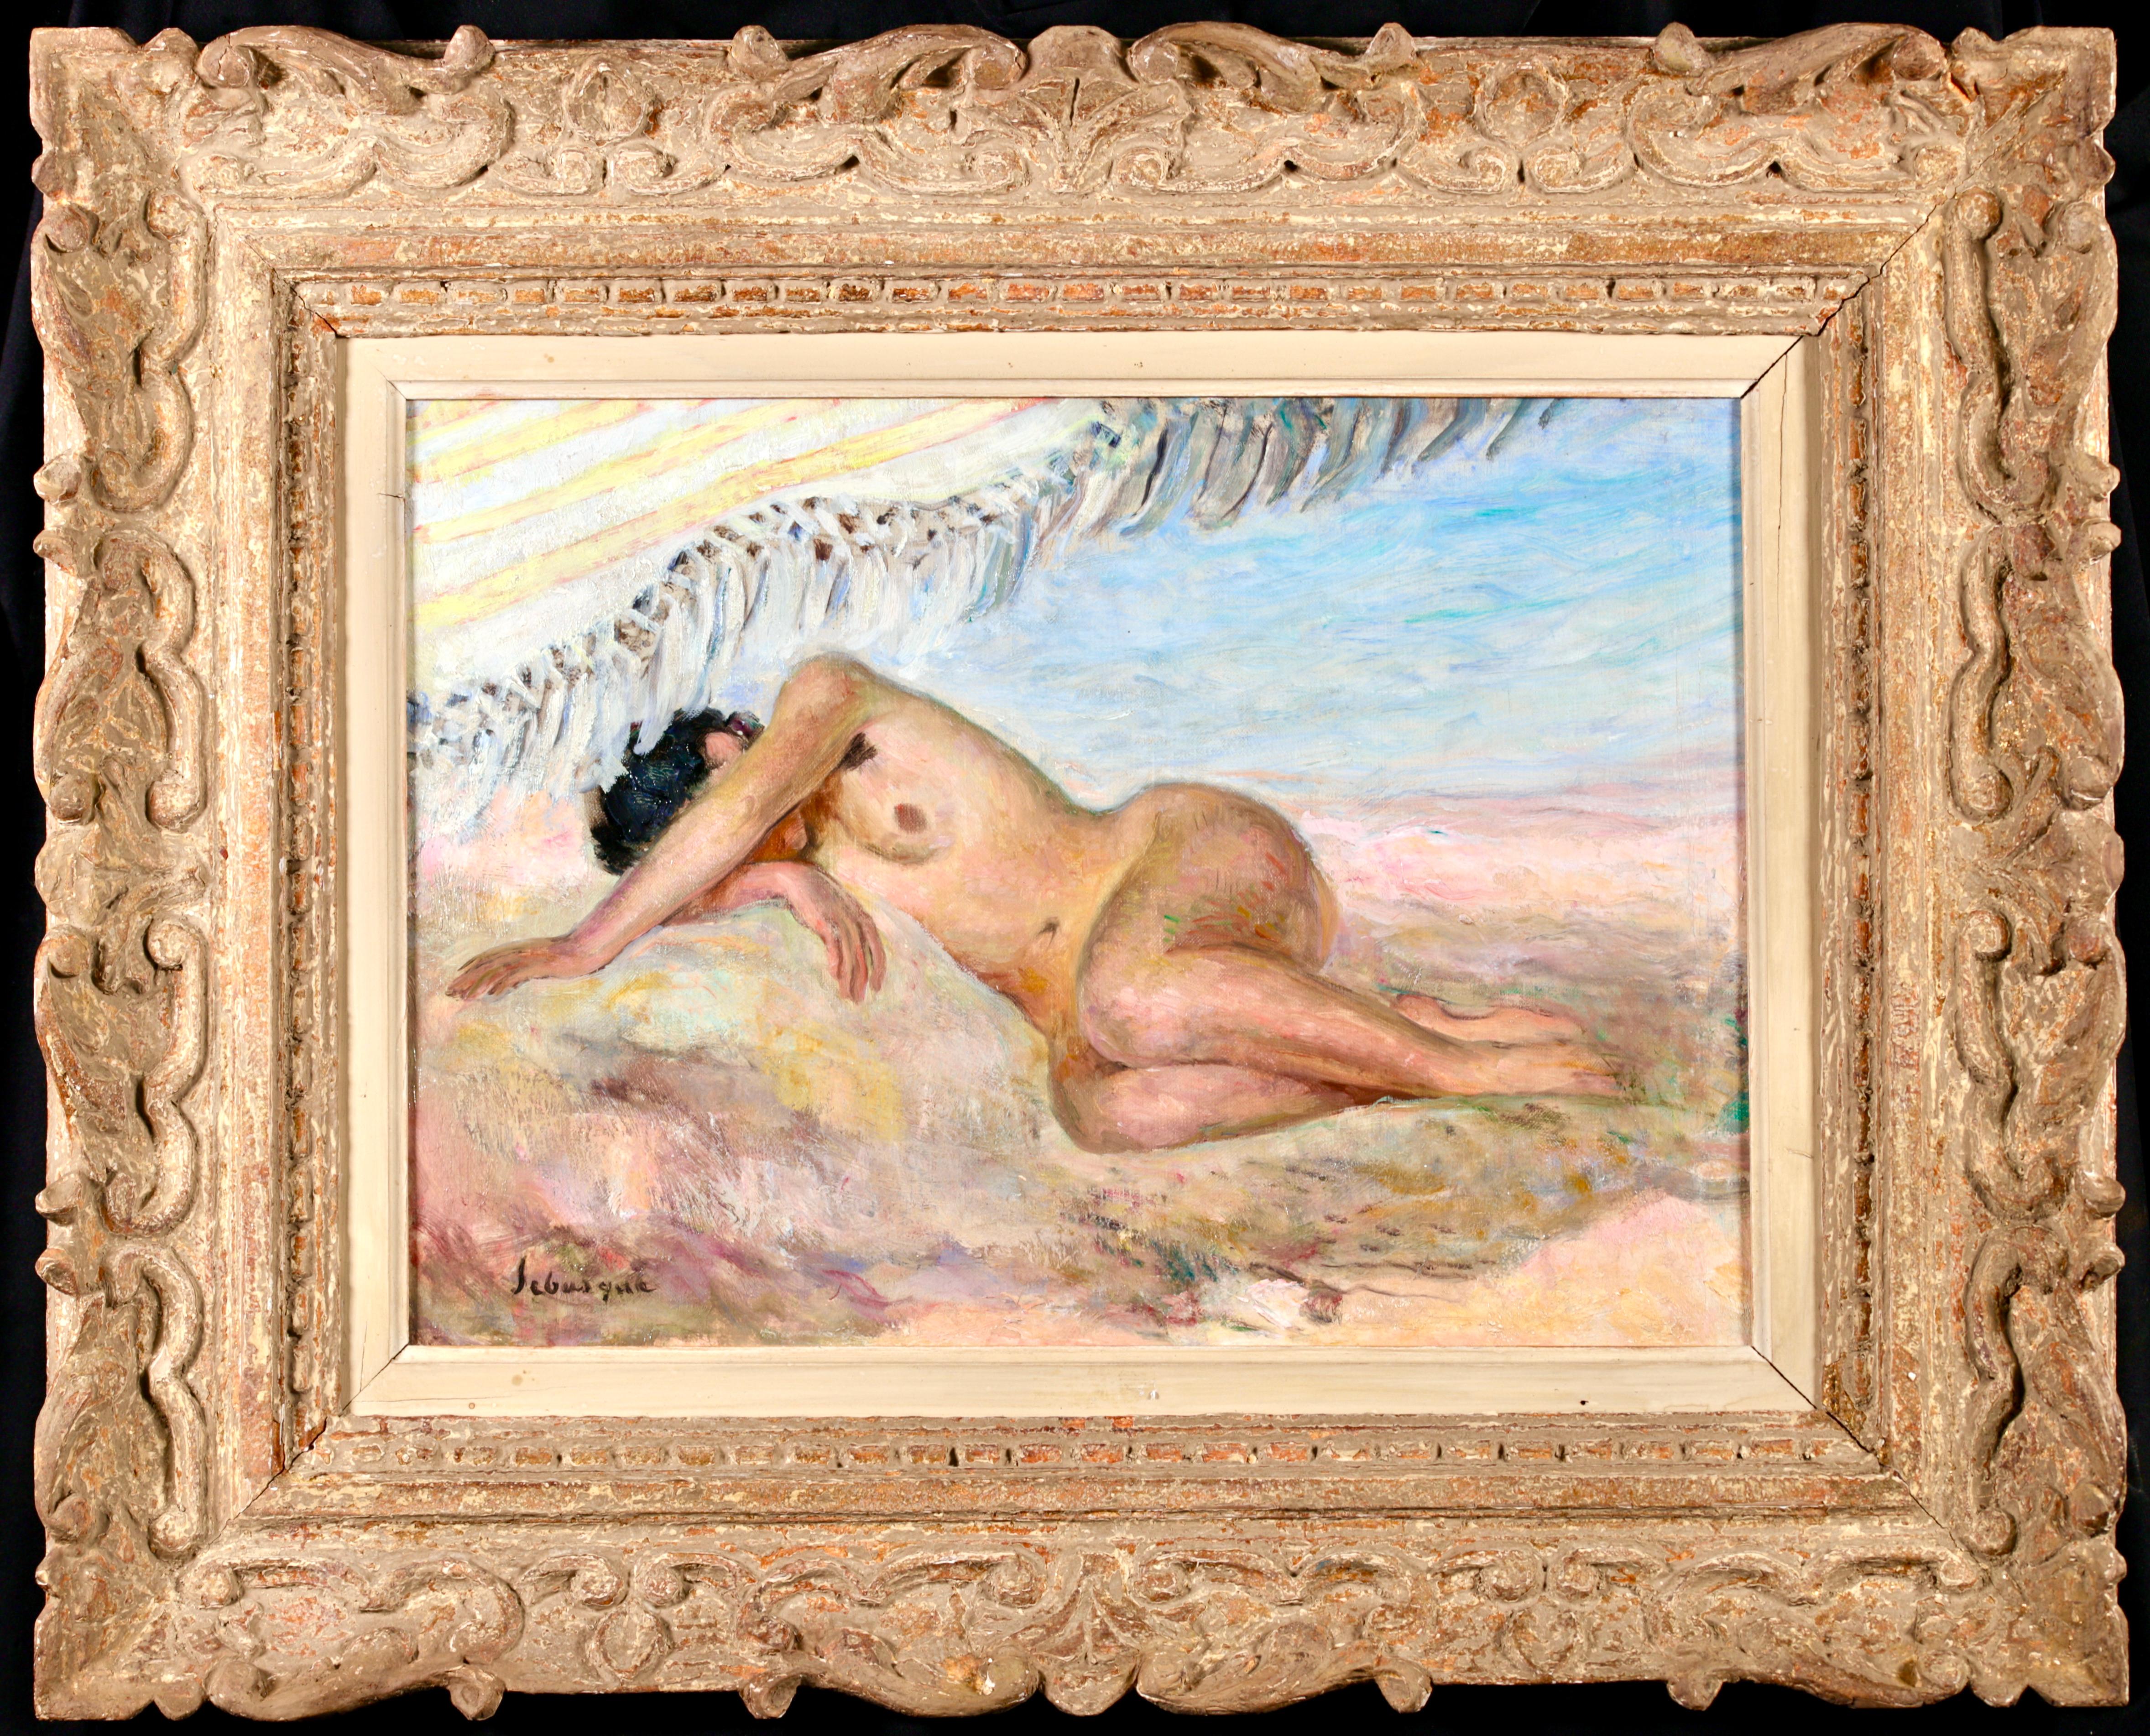 Huile sur toile signée vers 1920 par le peintre post-impressionniste français Henri Lebasque. L'œuvre représente une femme brune nue allongée sur une plage, son bras drapé sur sa tête couvrant son visage. Une pièce magnifiquement brossée.

Signature